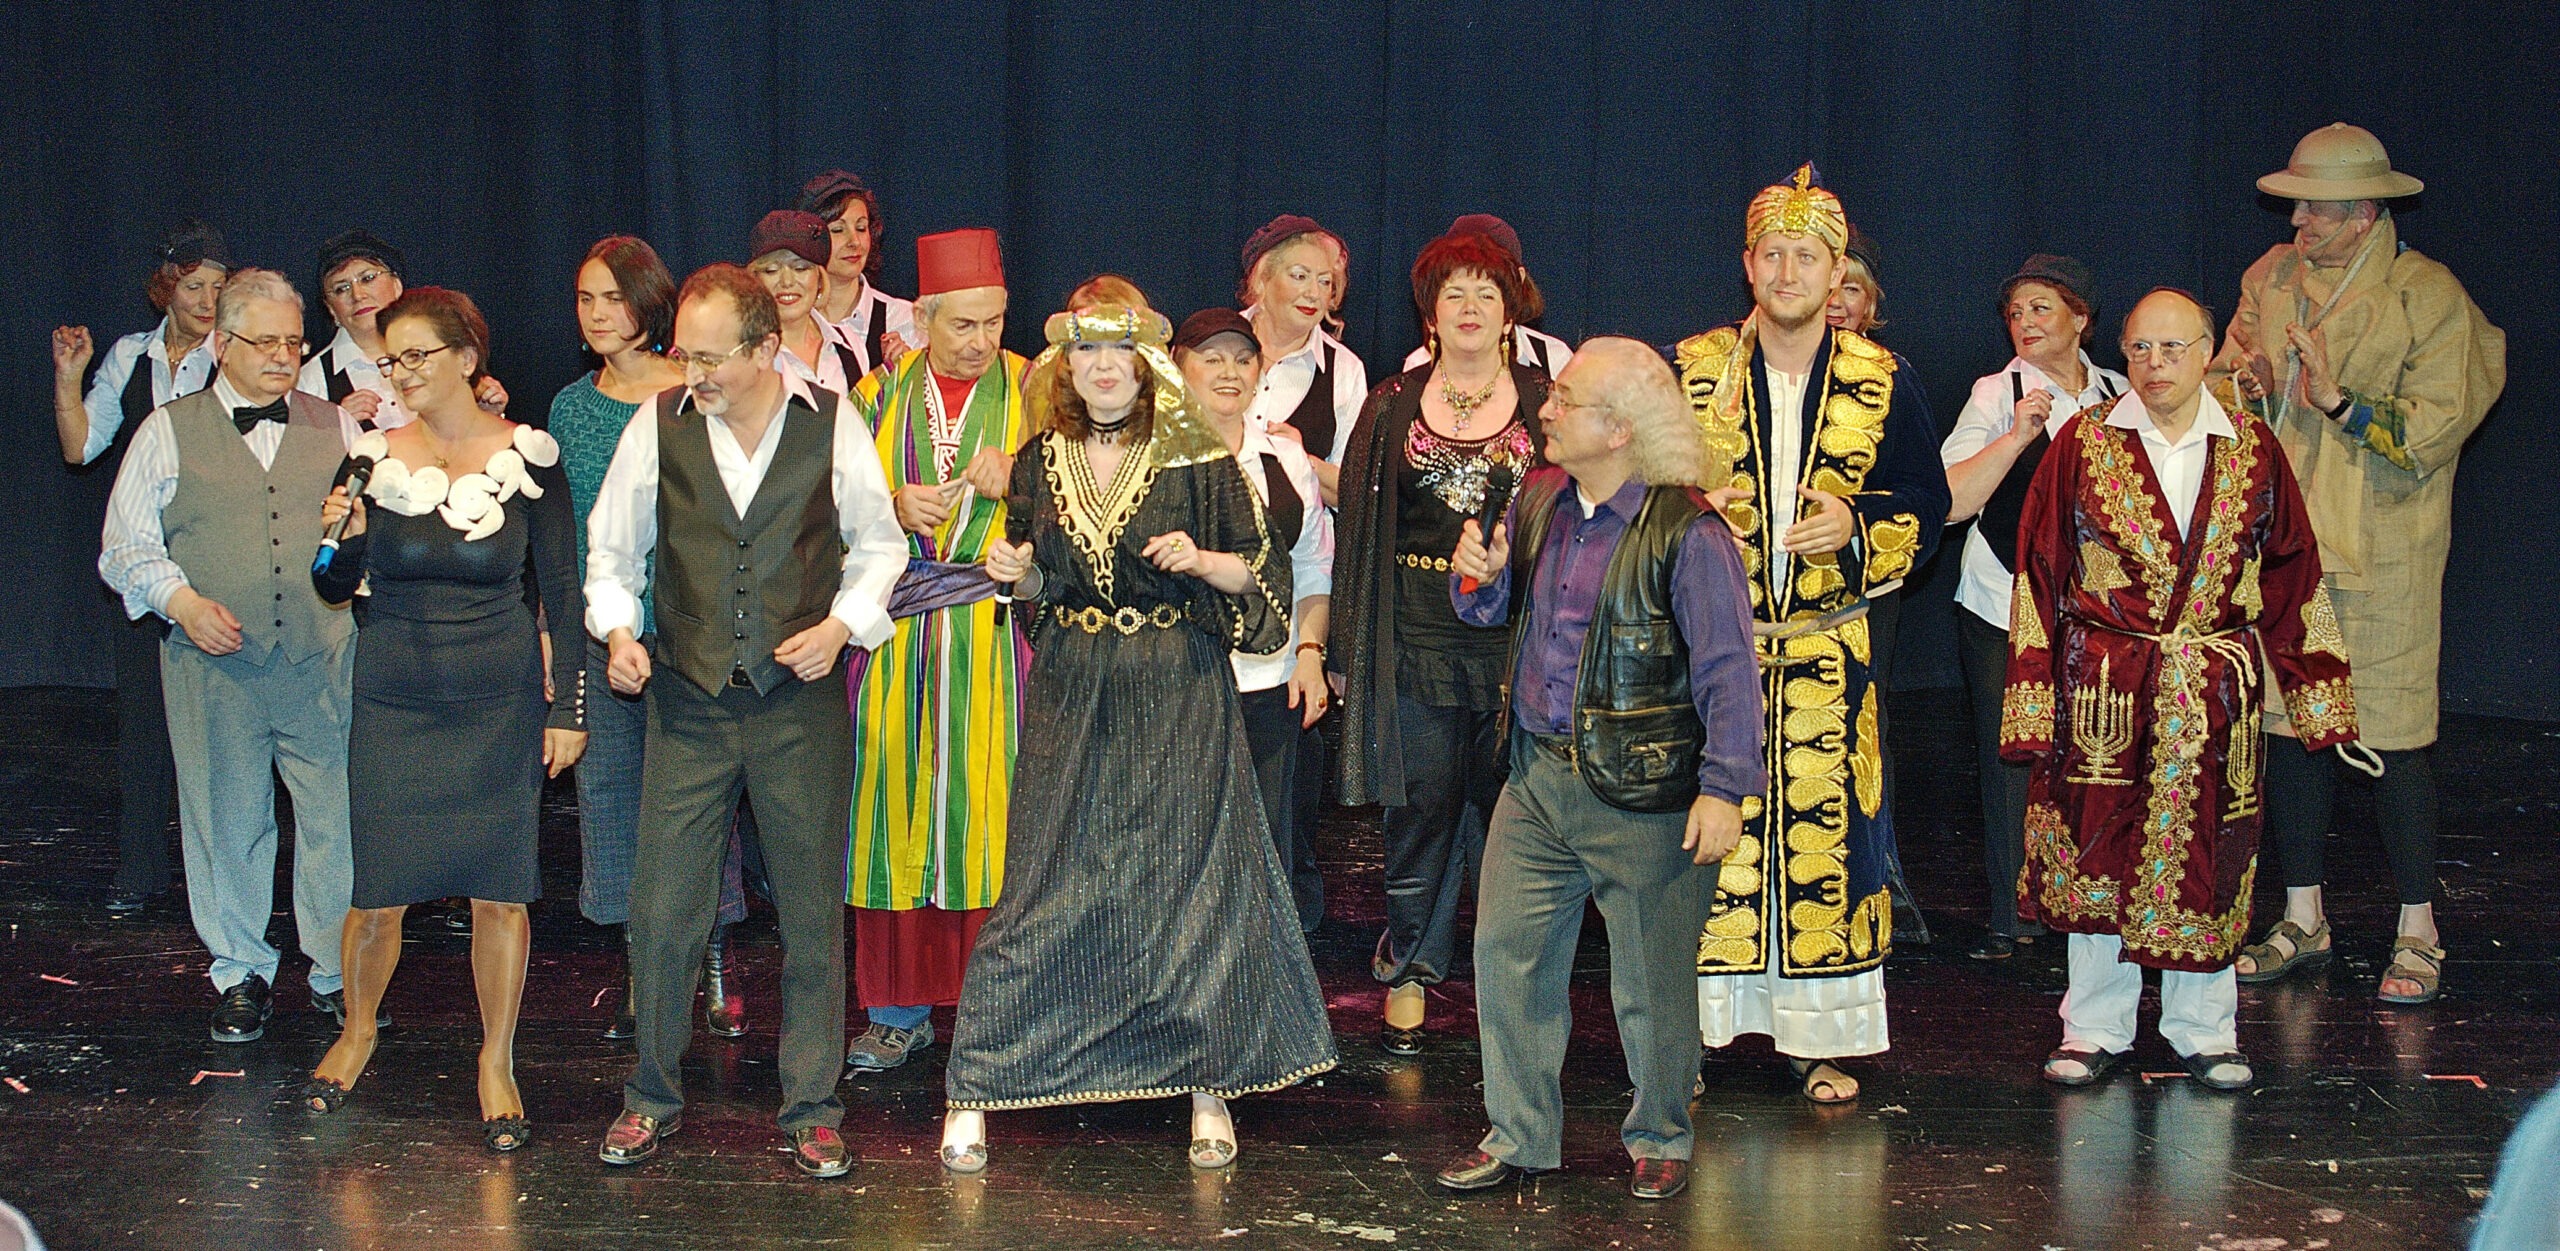 Theatergruppe der Jüdischen Gemeinde Wiesbaden bei einem Auftritt in der Wartburg. Fotograf: Igor Eisenschtat. Sammlung Jüdische Gemeinde Wiesbaden